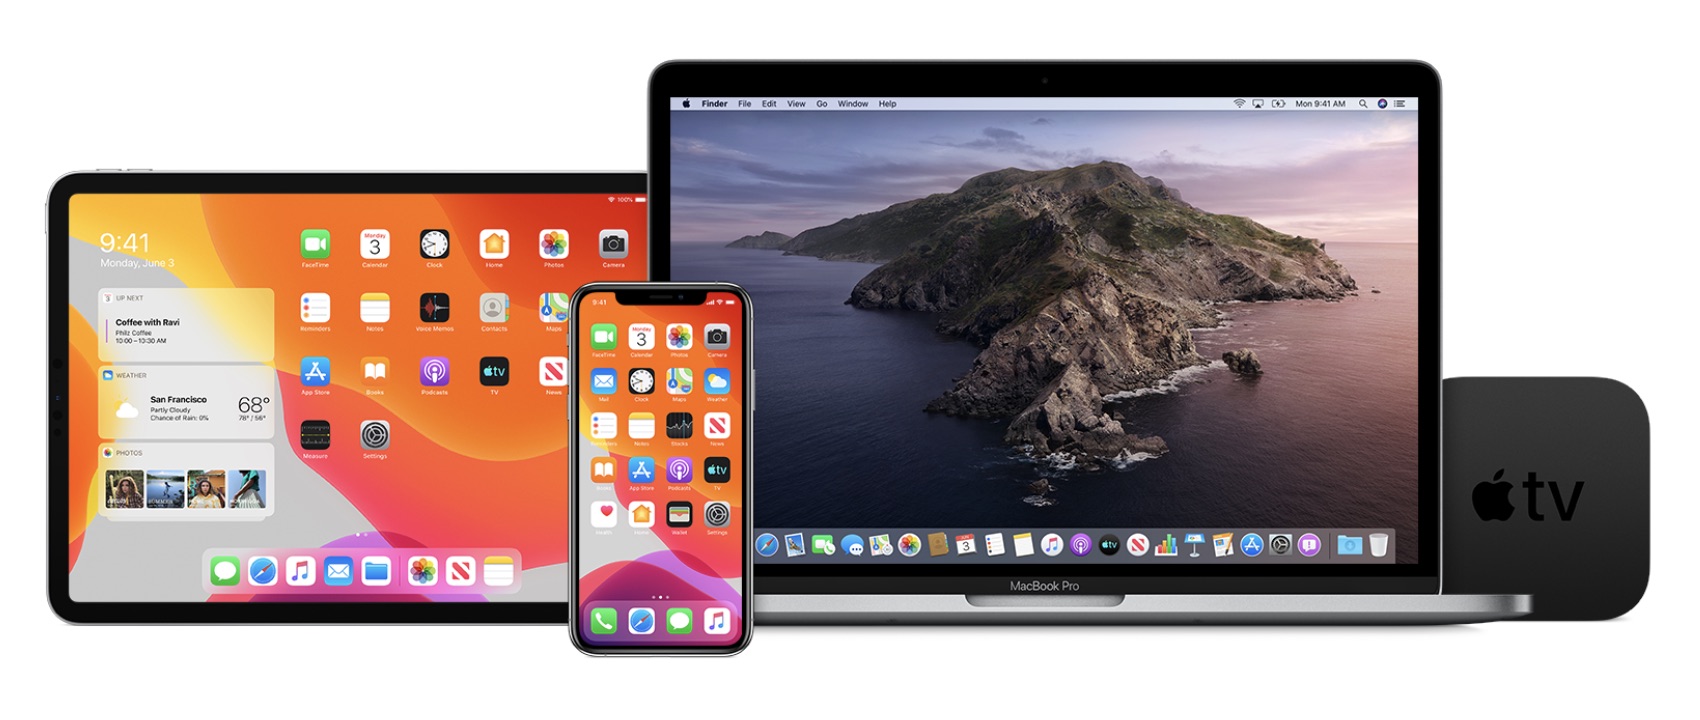 macbook ipad apple watch pictures